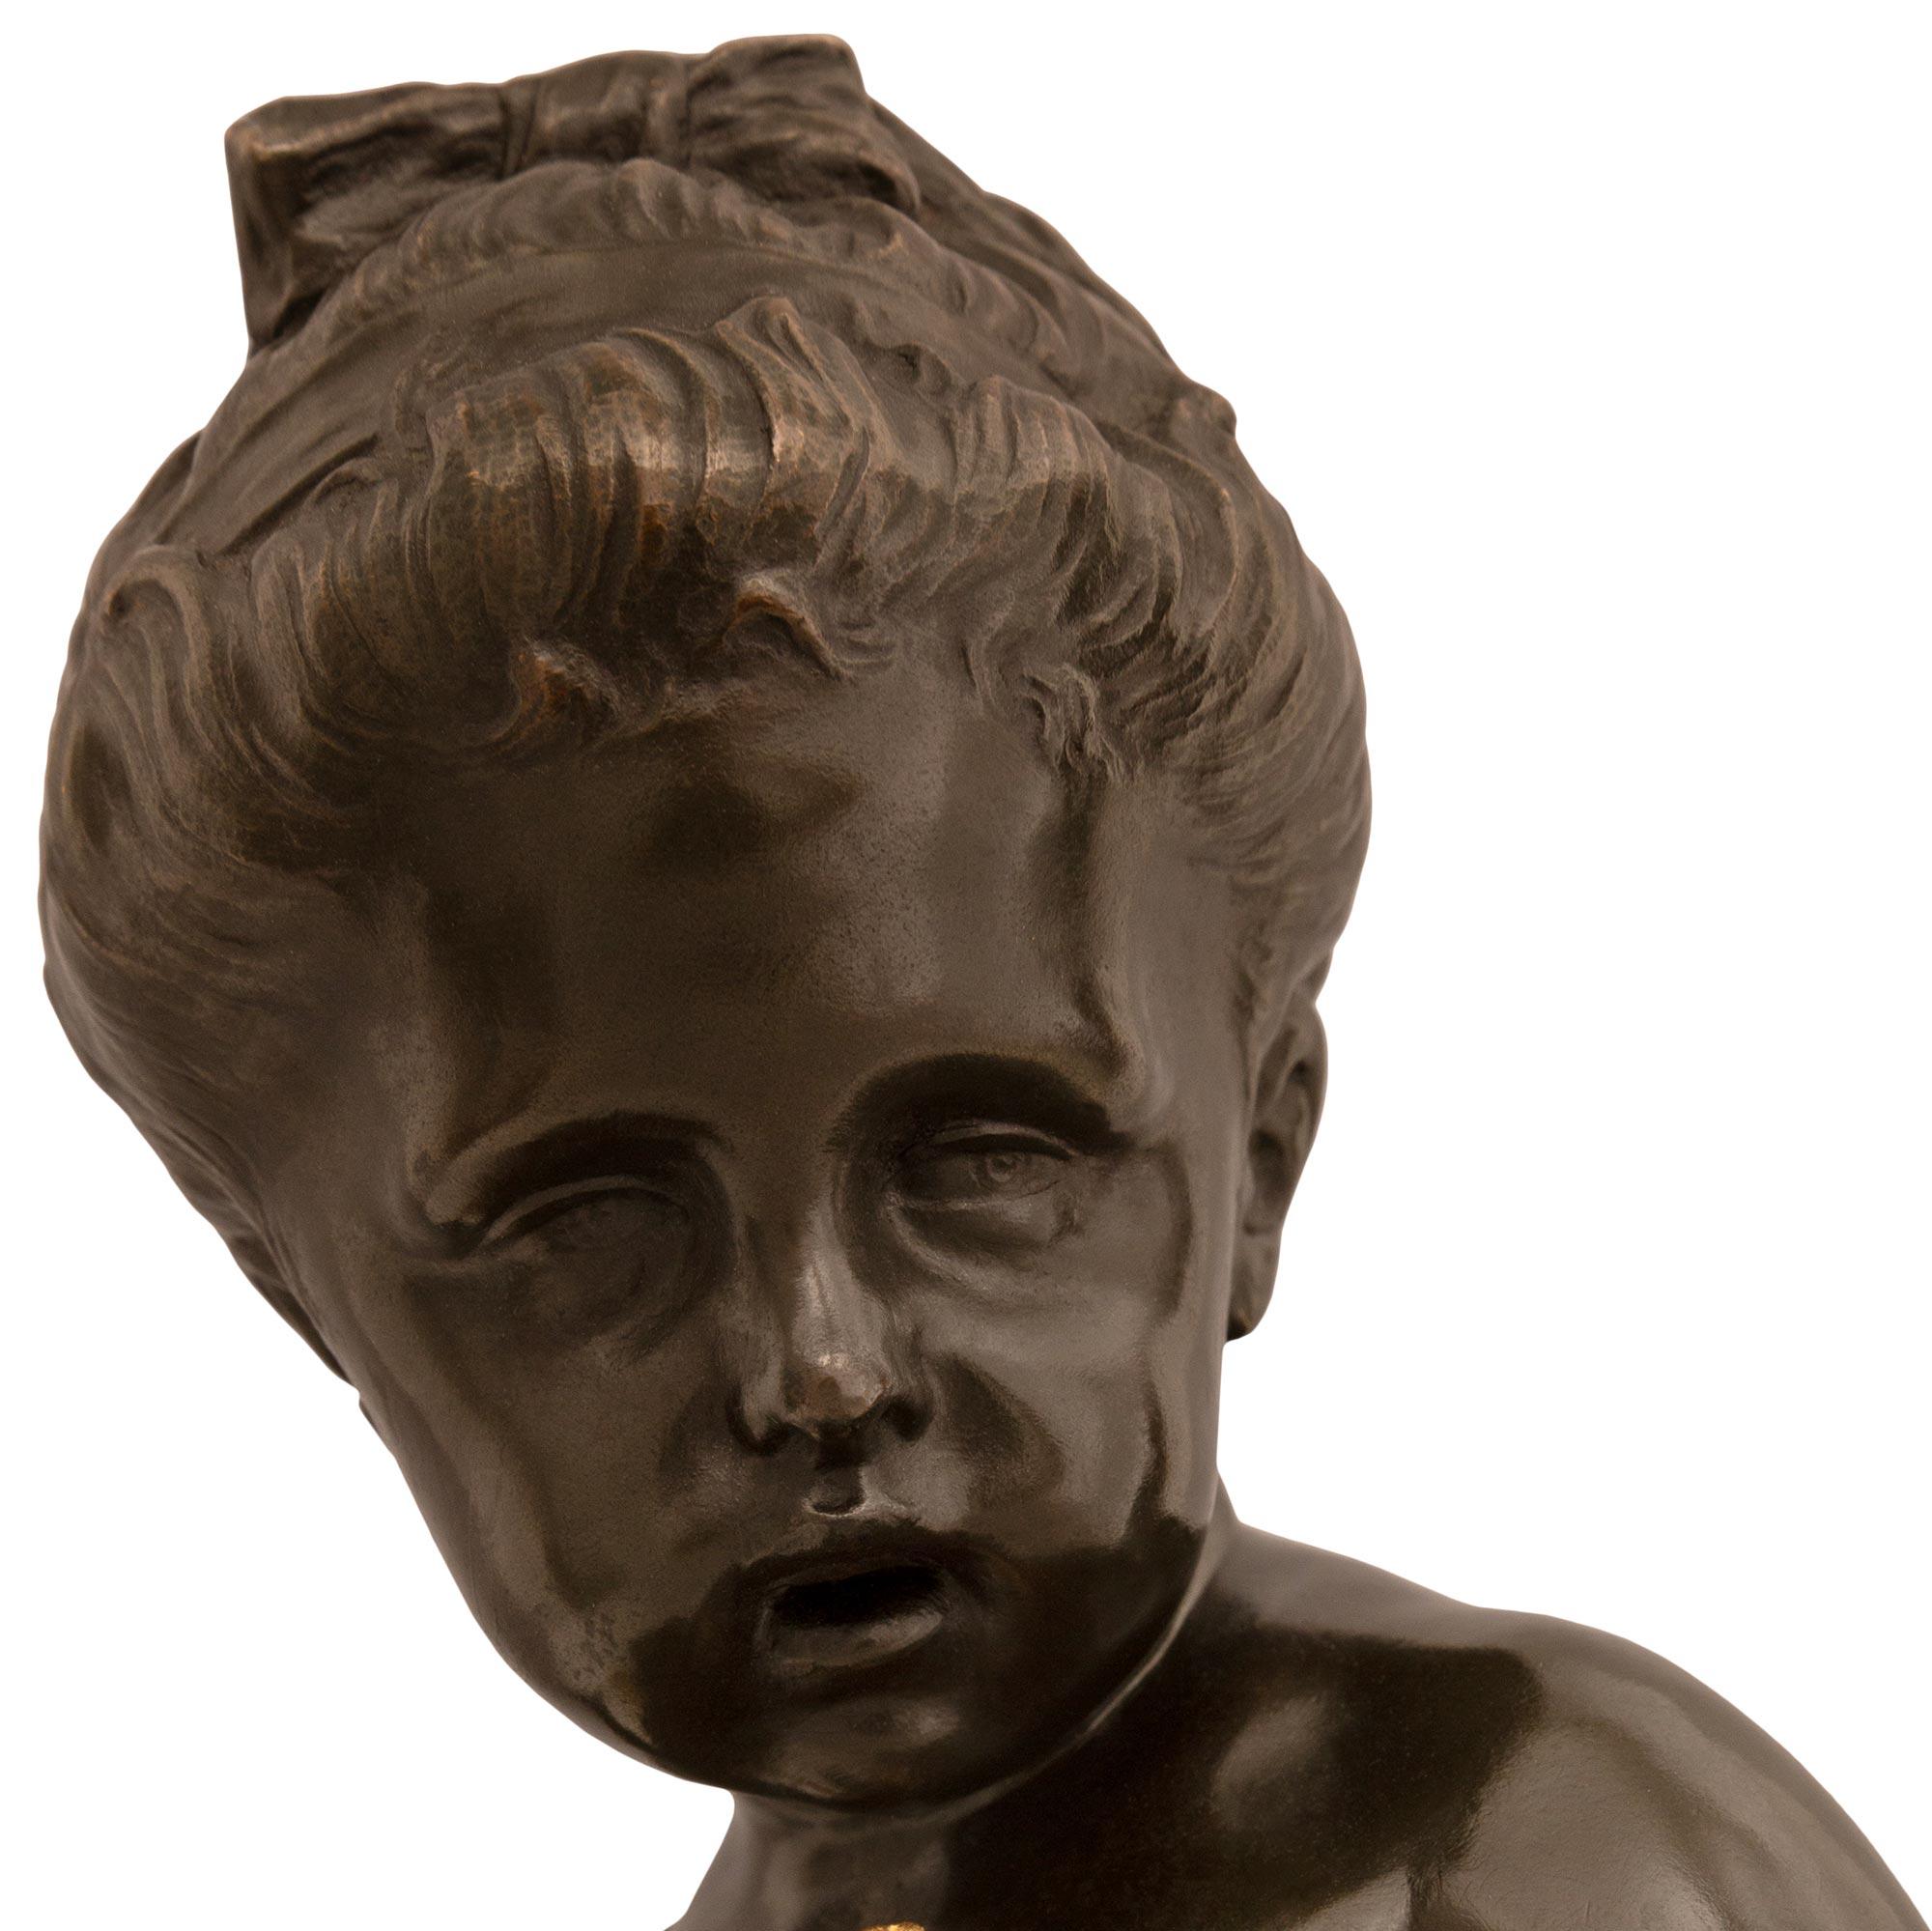 Charmante statue en bronze patiné et bronze doré de style Louis XVI du XIXe siècle représentant un jeune chérubin. La statue est surmontée d'une base carrée en marbre gris St. Anne sur des colonnes en bronze doré. Les quatre côtés du piédestal sont